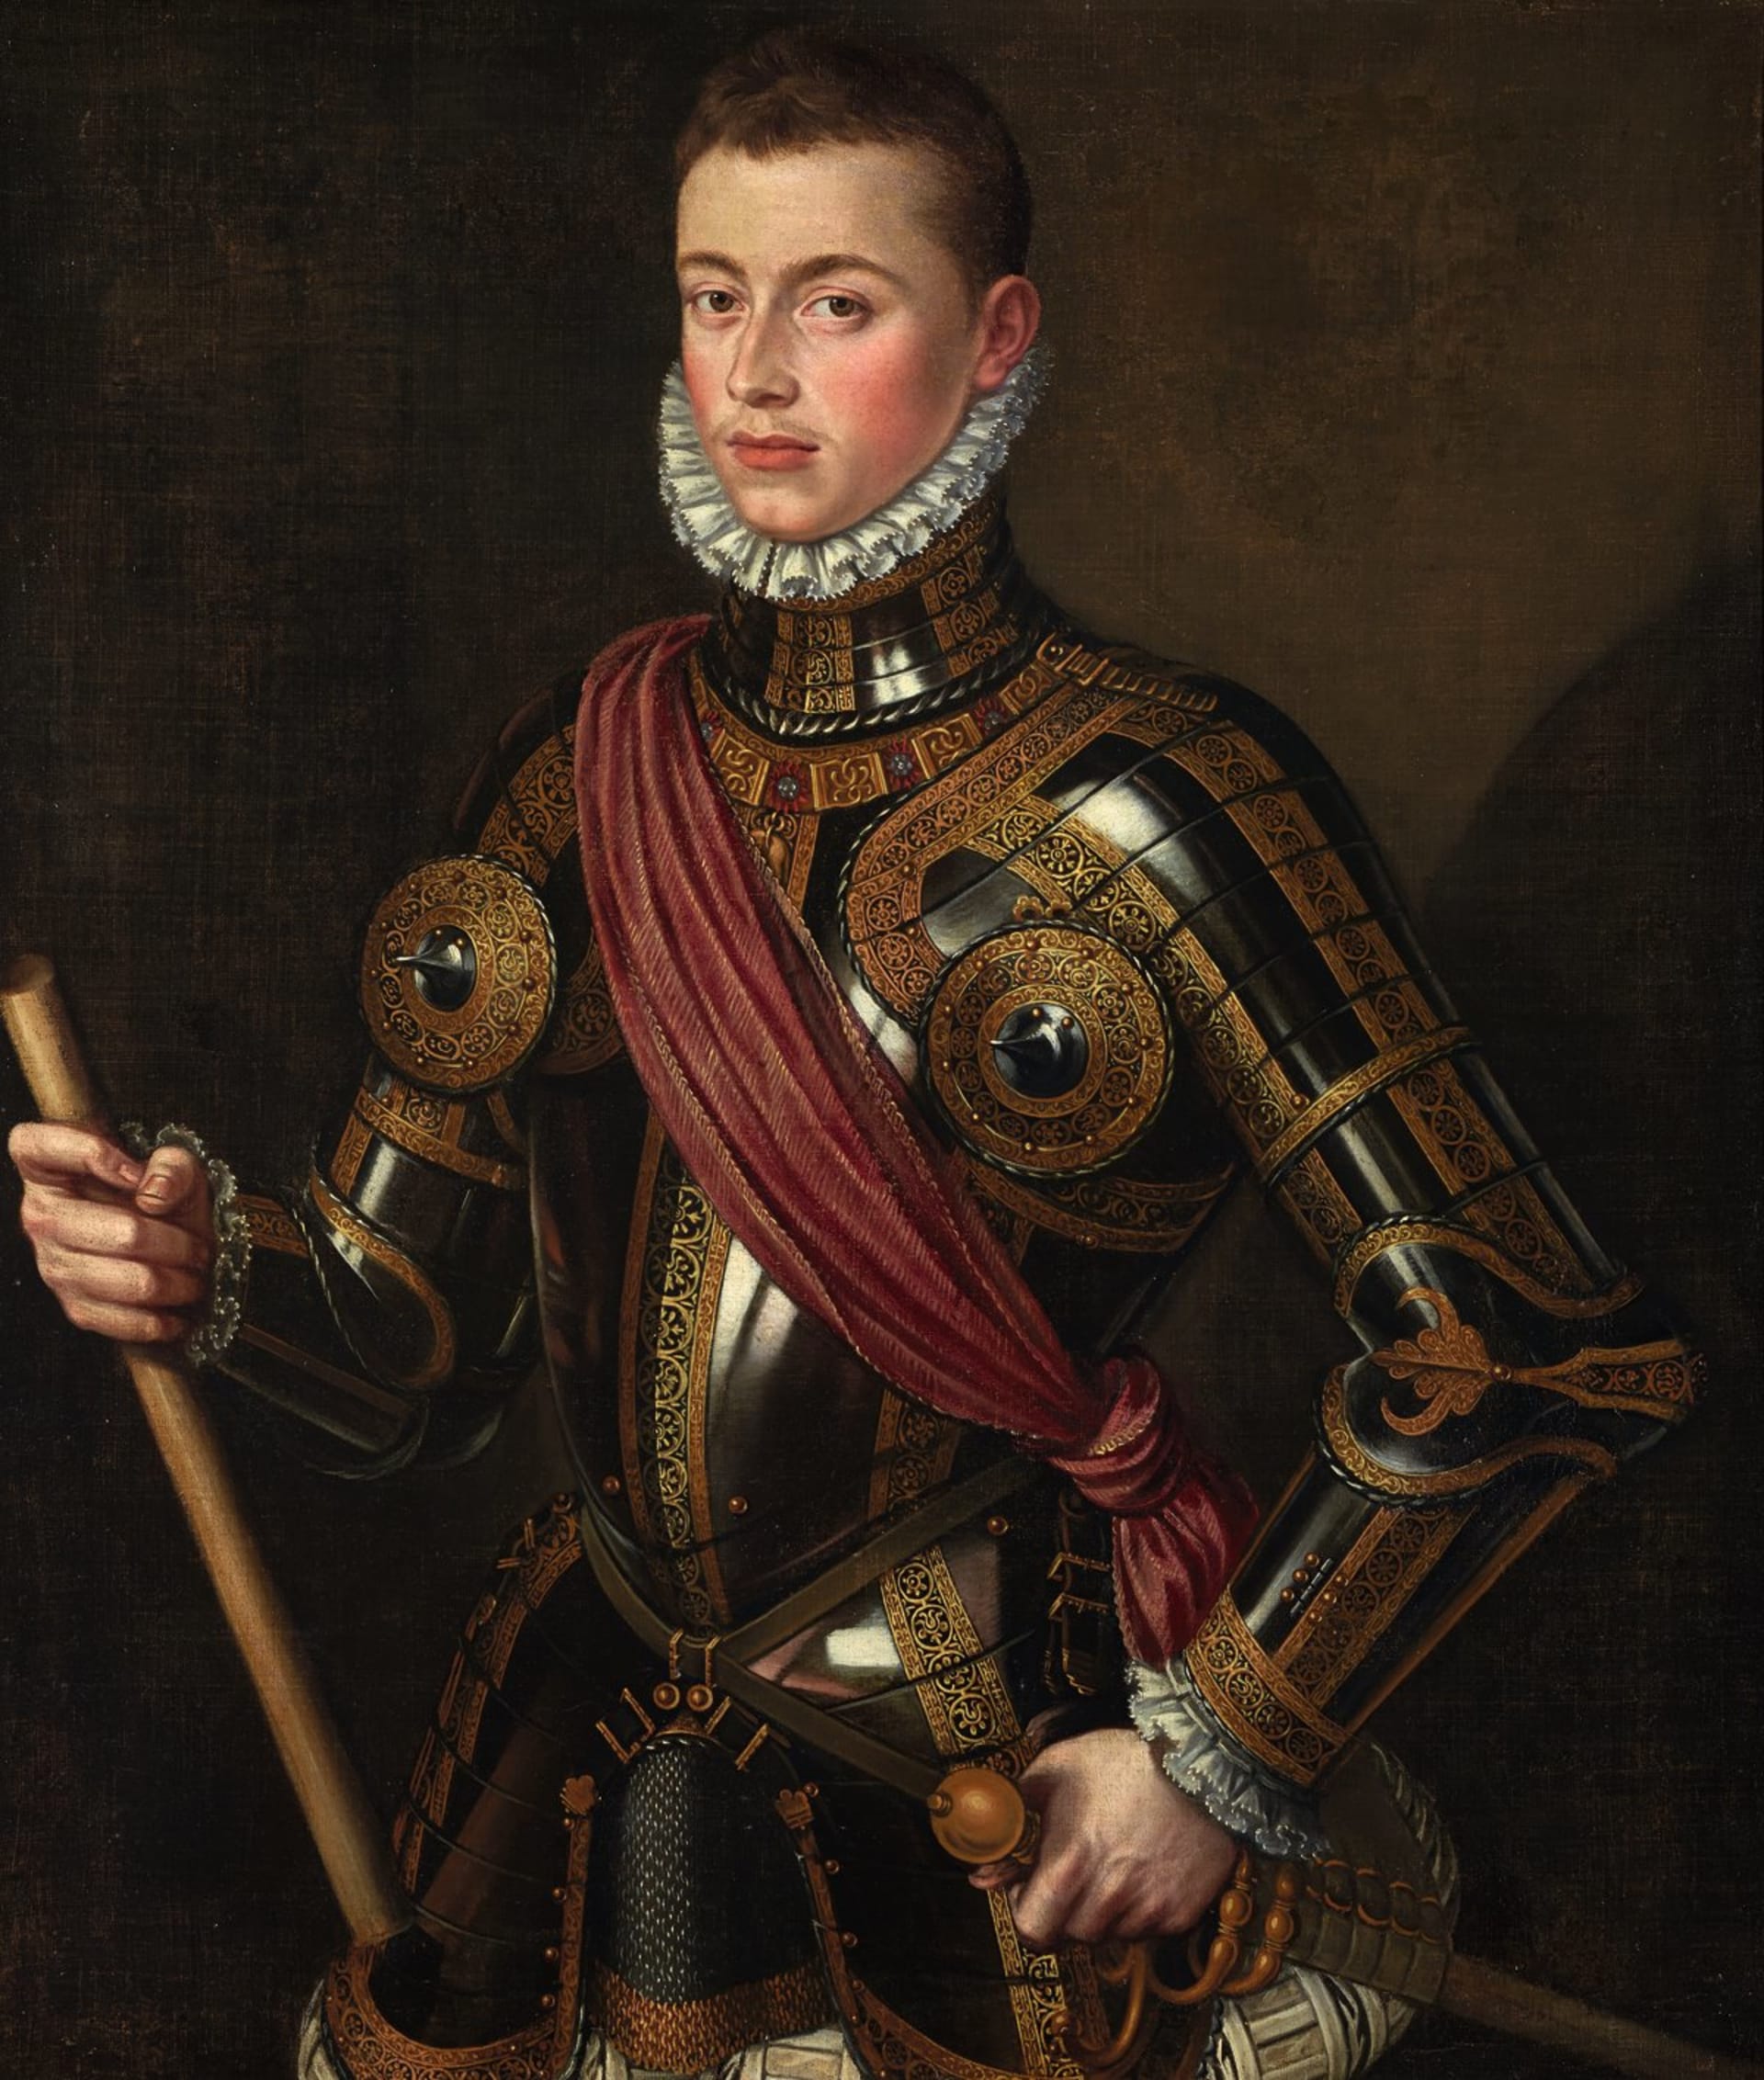 Lepanto - Juan de Austria